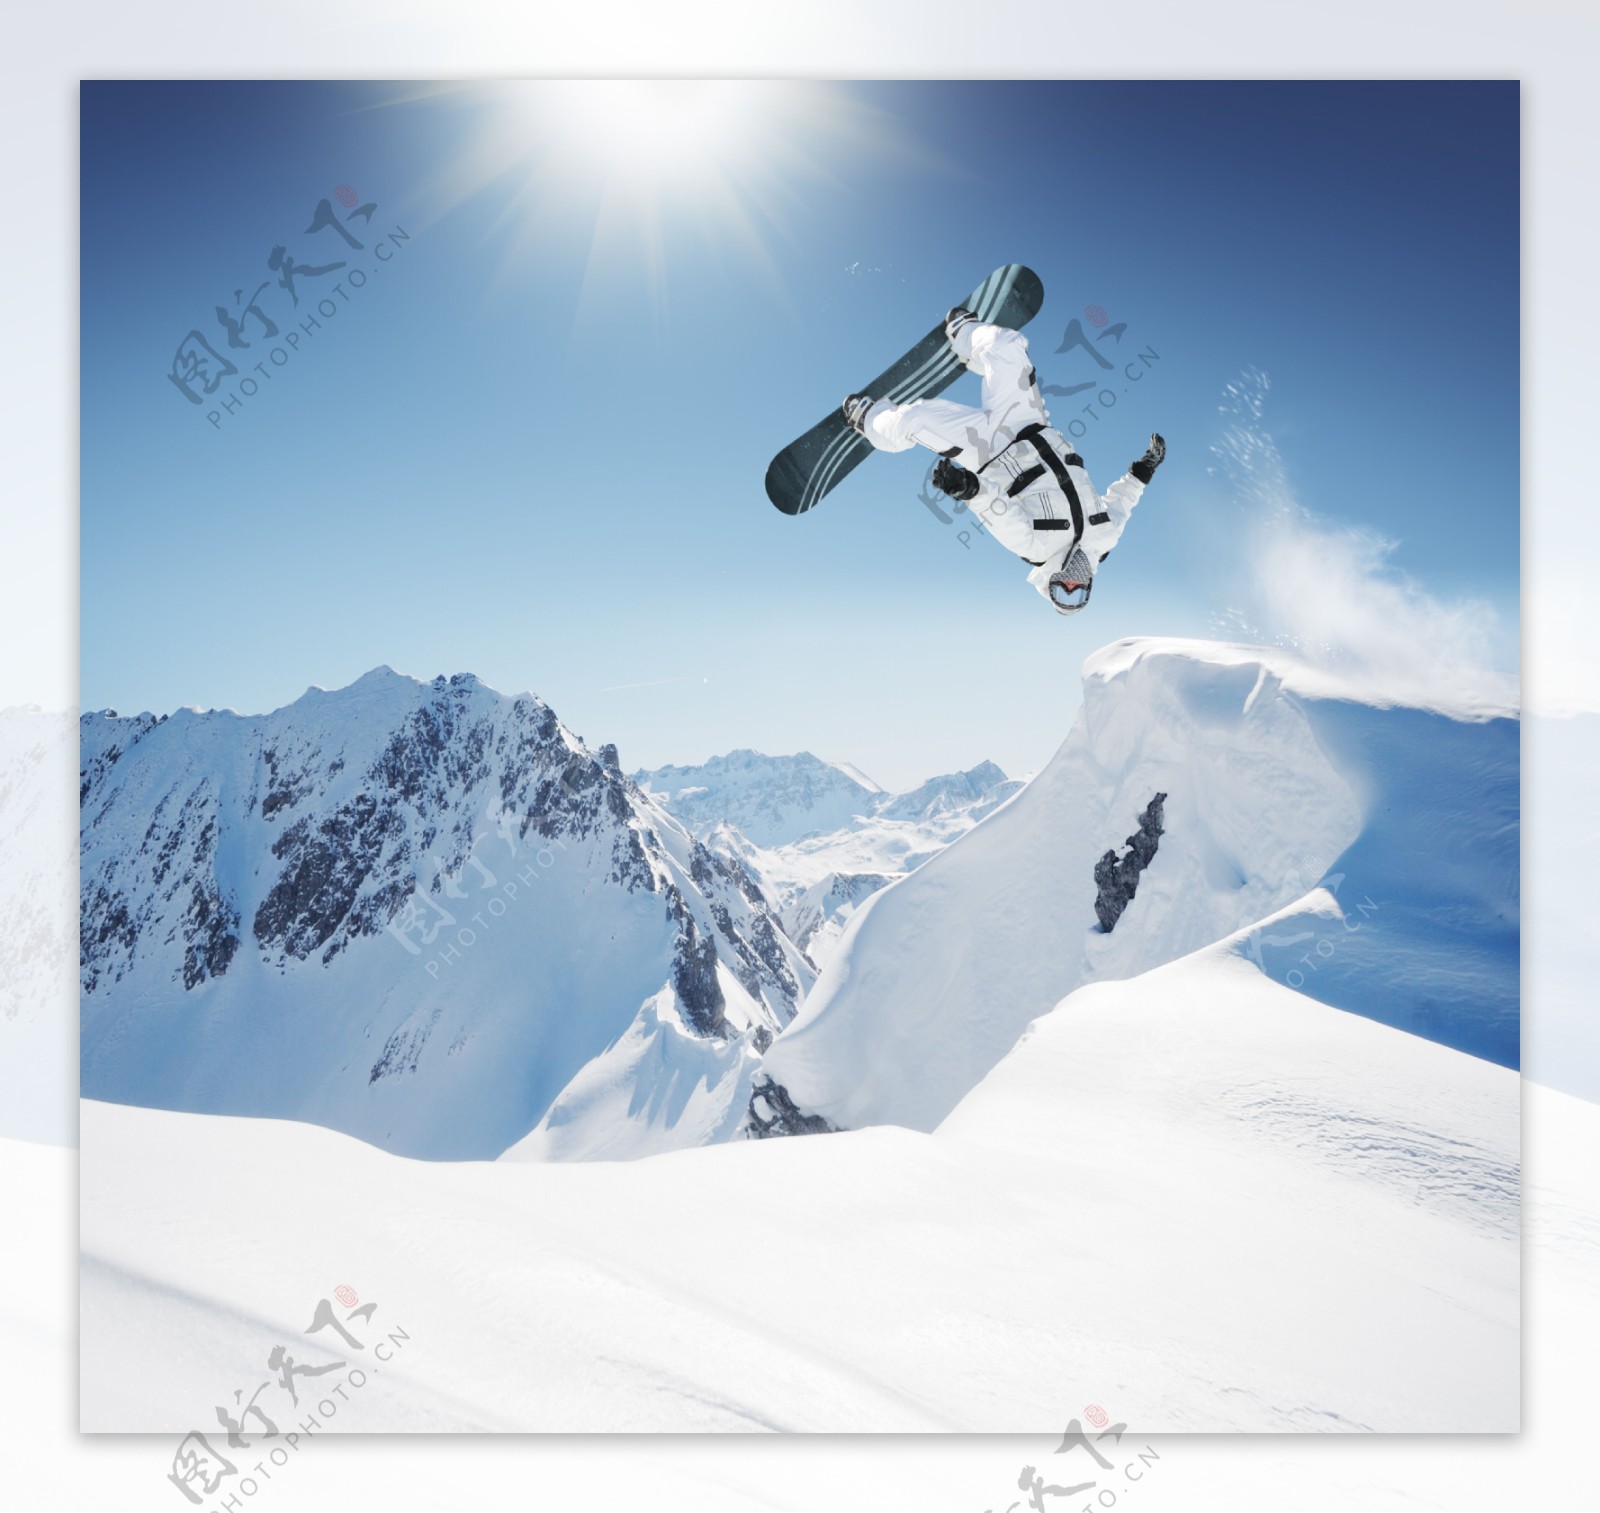 跃起的滑雪者图片